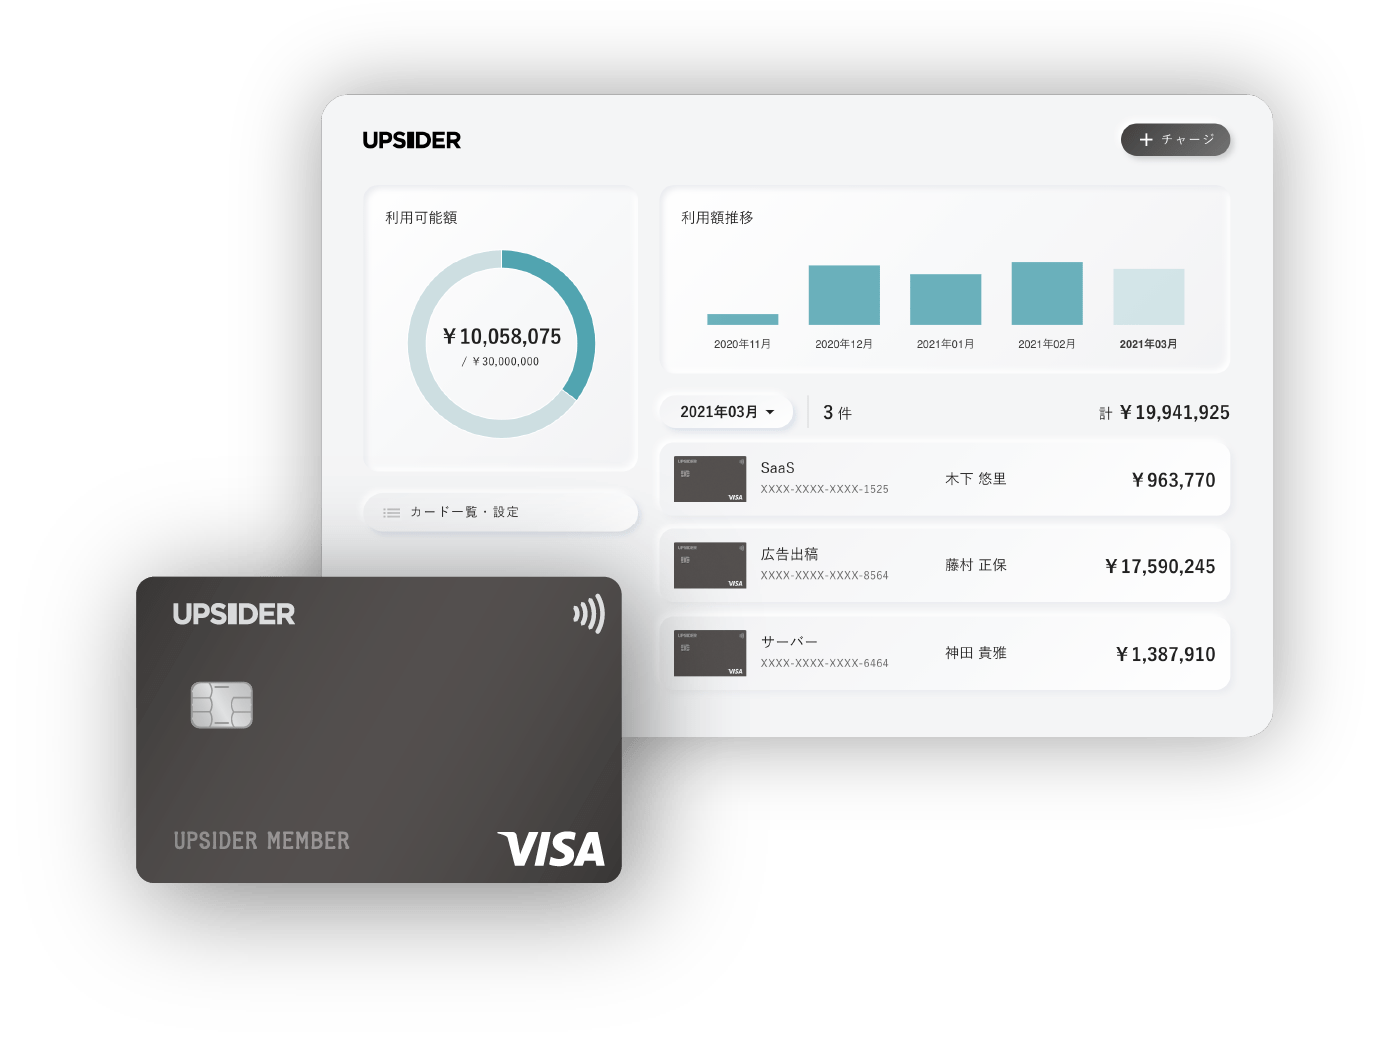 UPSIDERのカードとダッシュボードのイメージ。カードごとに用途や上限金額などを細かくコントールできる   